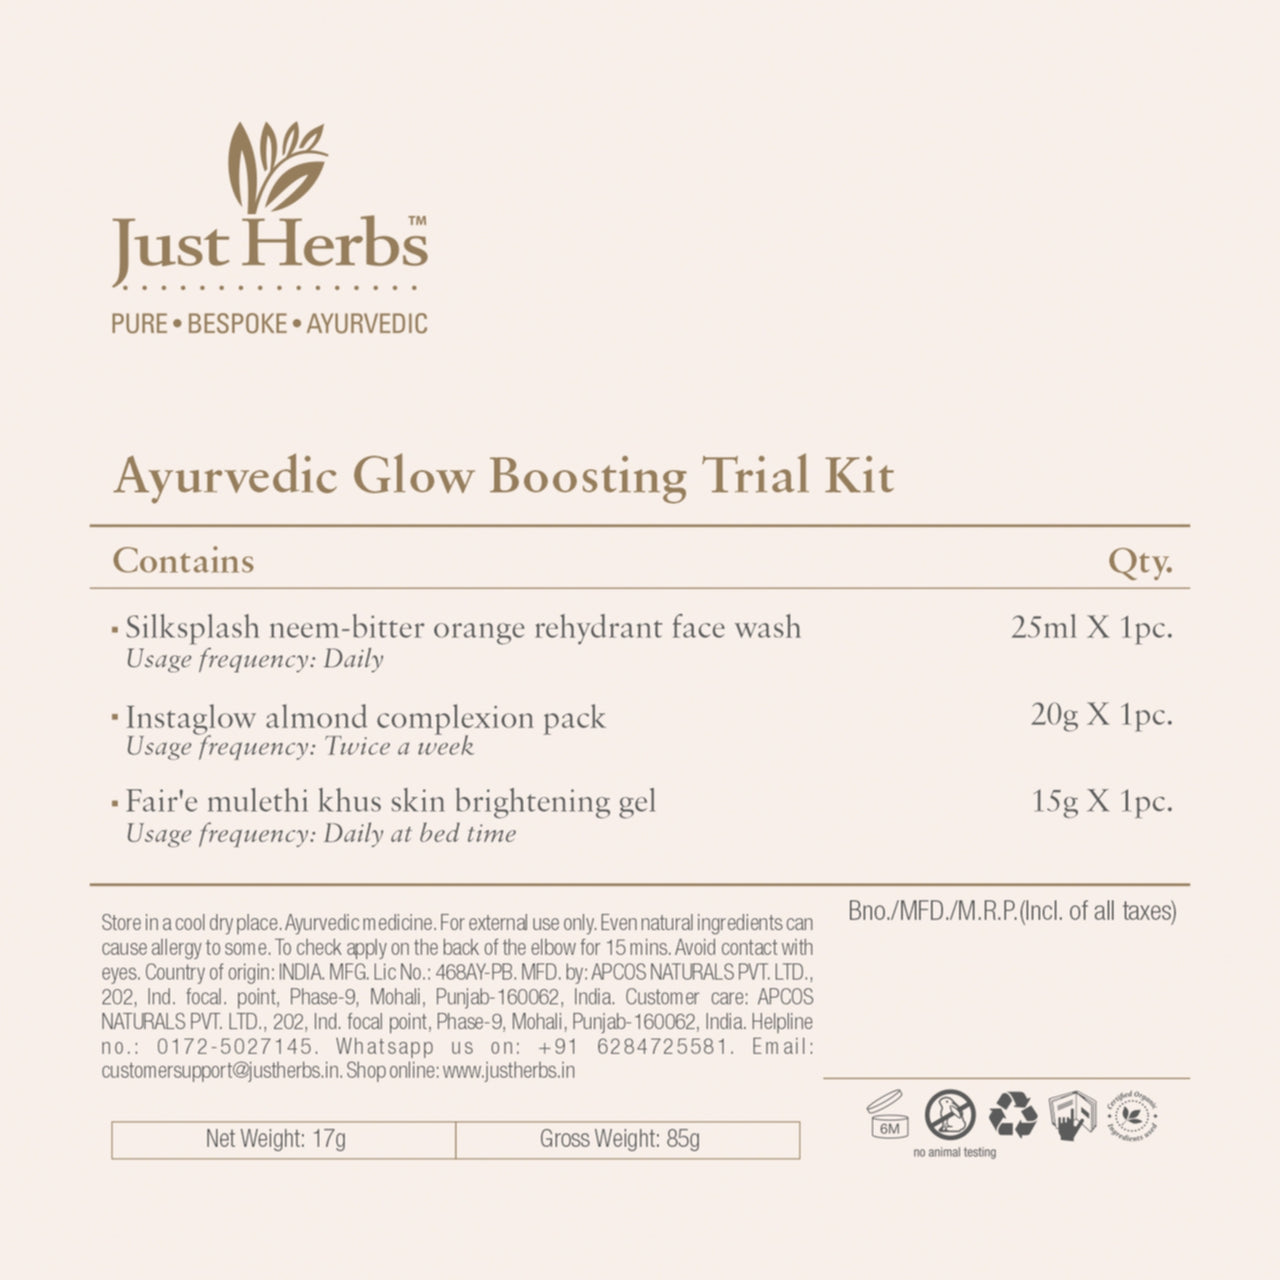 Ayurvedic Glow Boosting Trial Kit